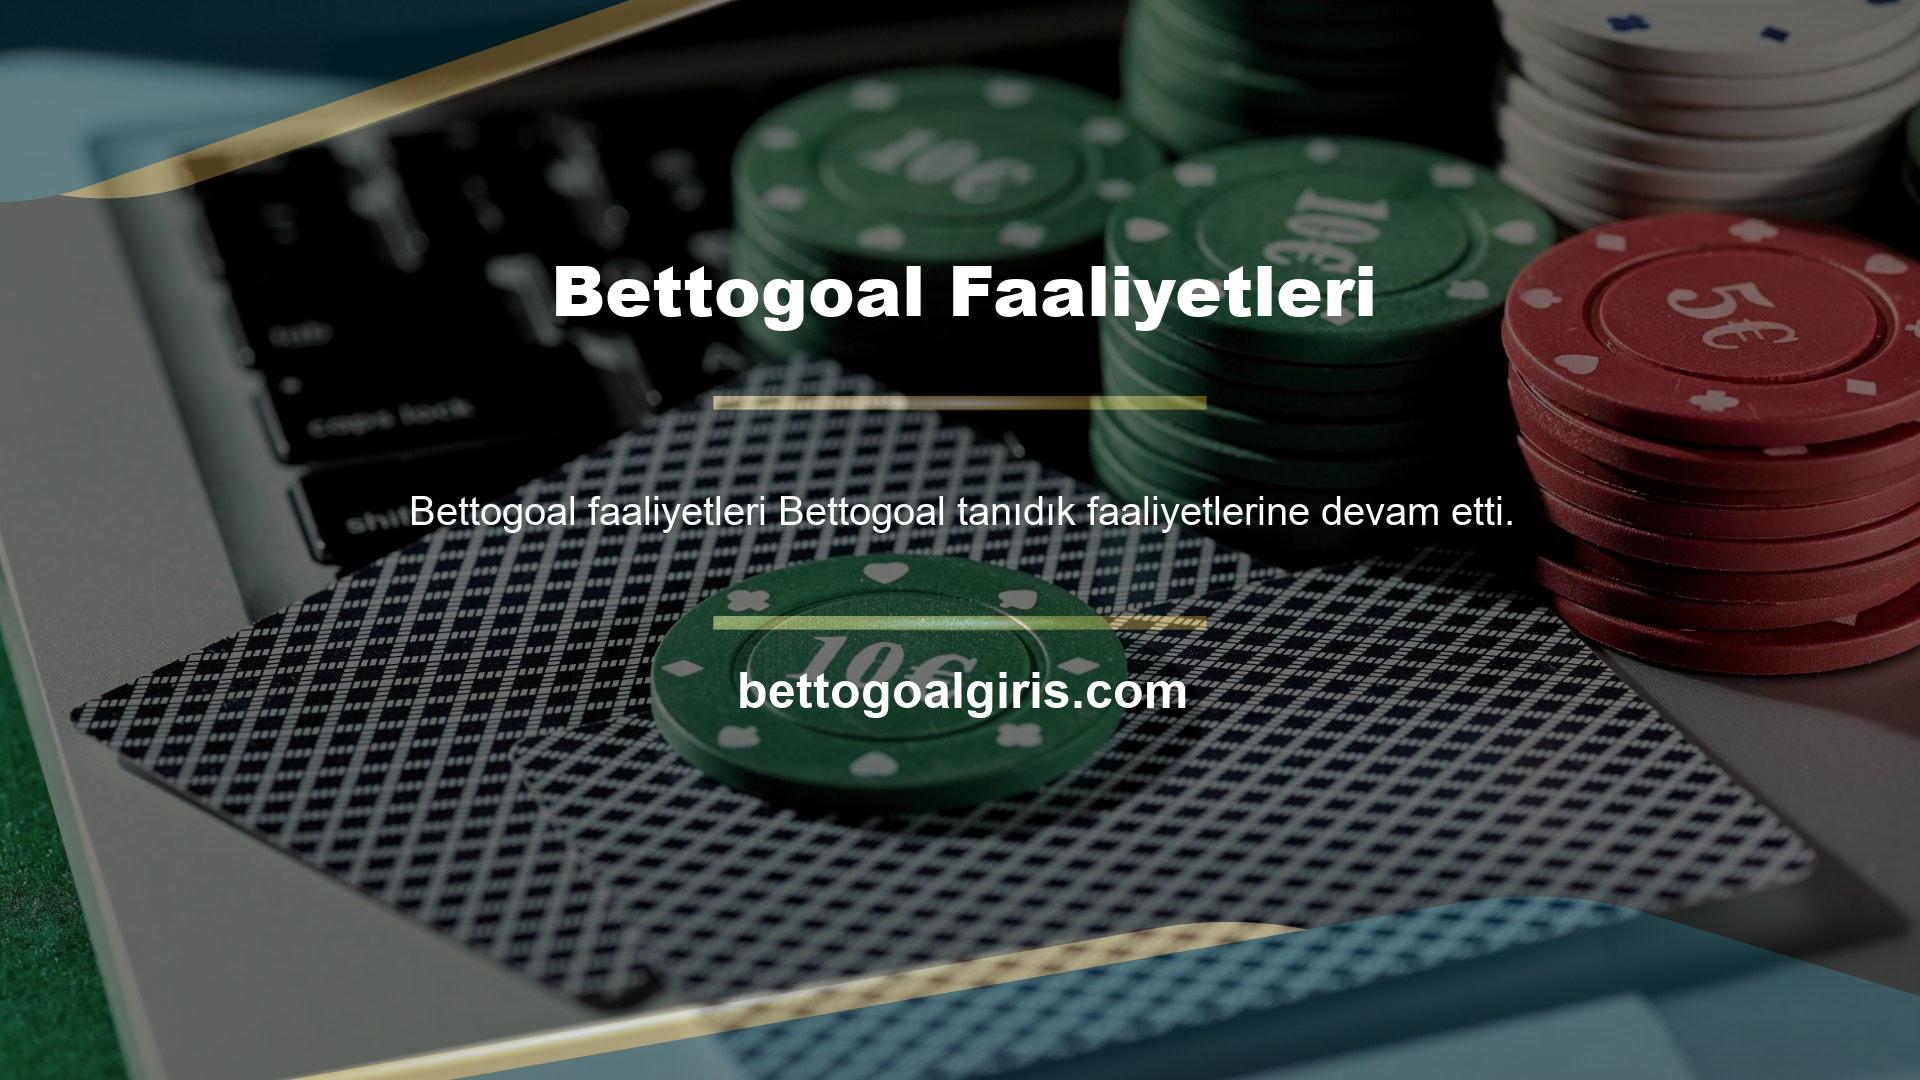 Şimdiye kadar Bettogoal, Avrupa'nın en iyi bahis sitesi haline geldi